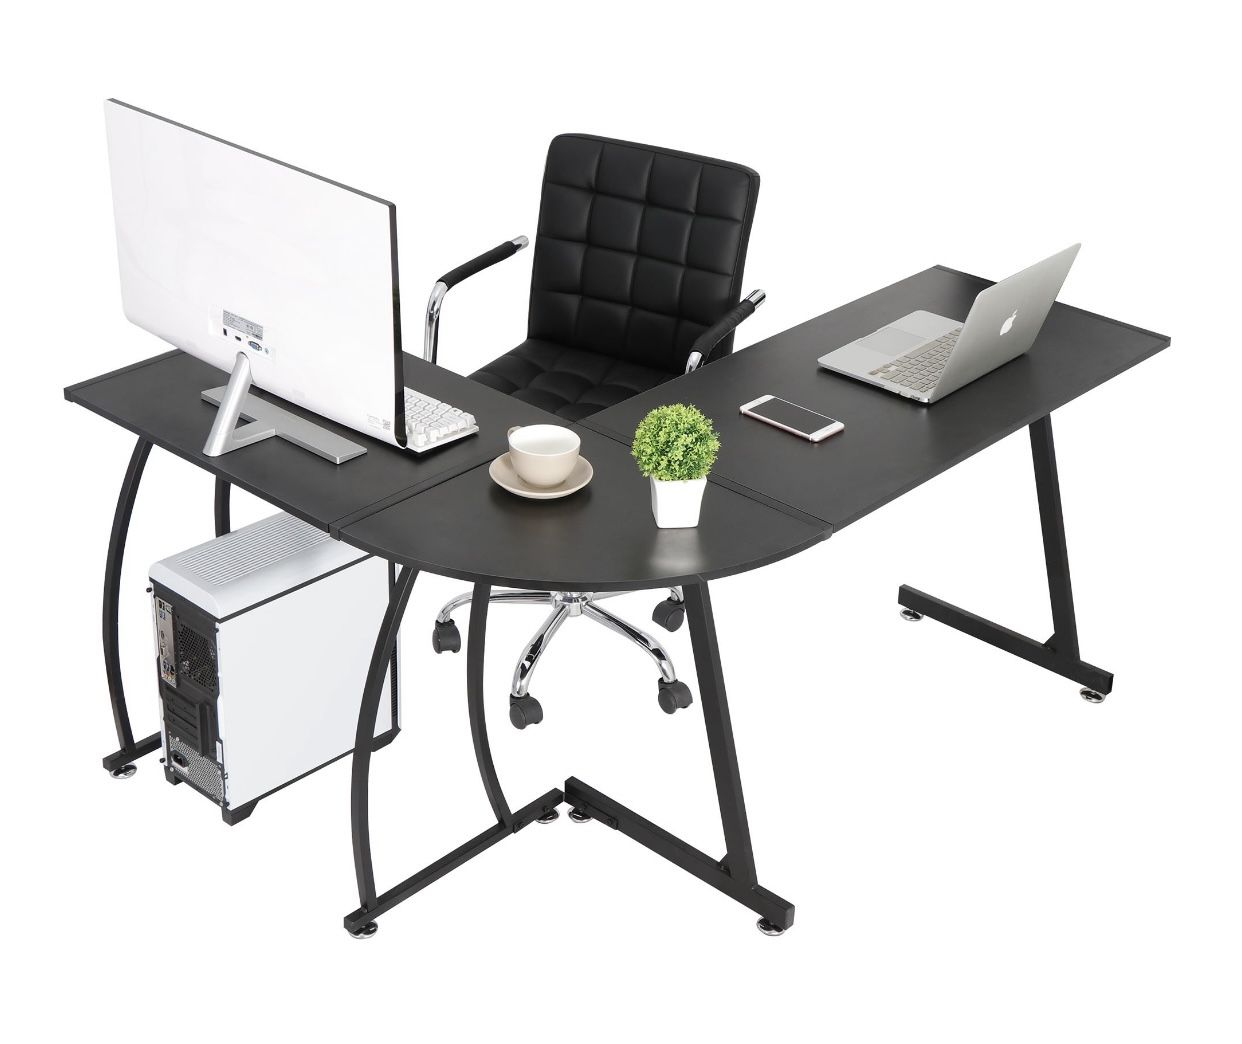 NEW - Modern L-Shaped Laptop Corner Desk Computer Desk Table, Home Office Writing Workstation Black